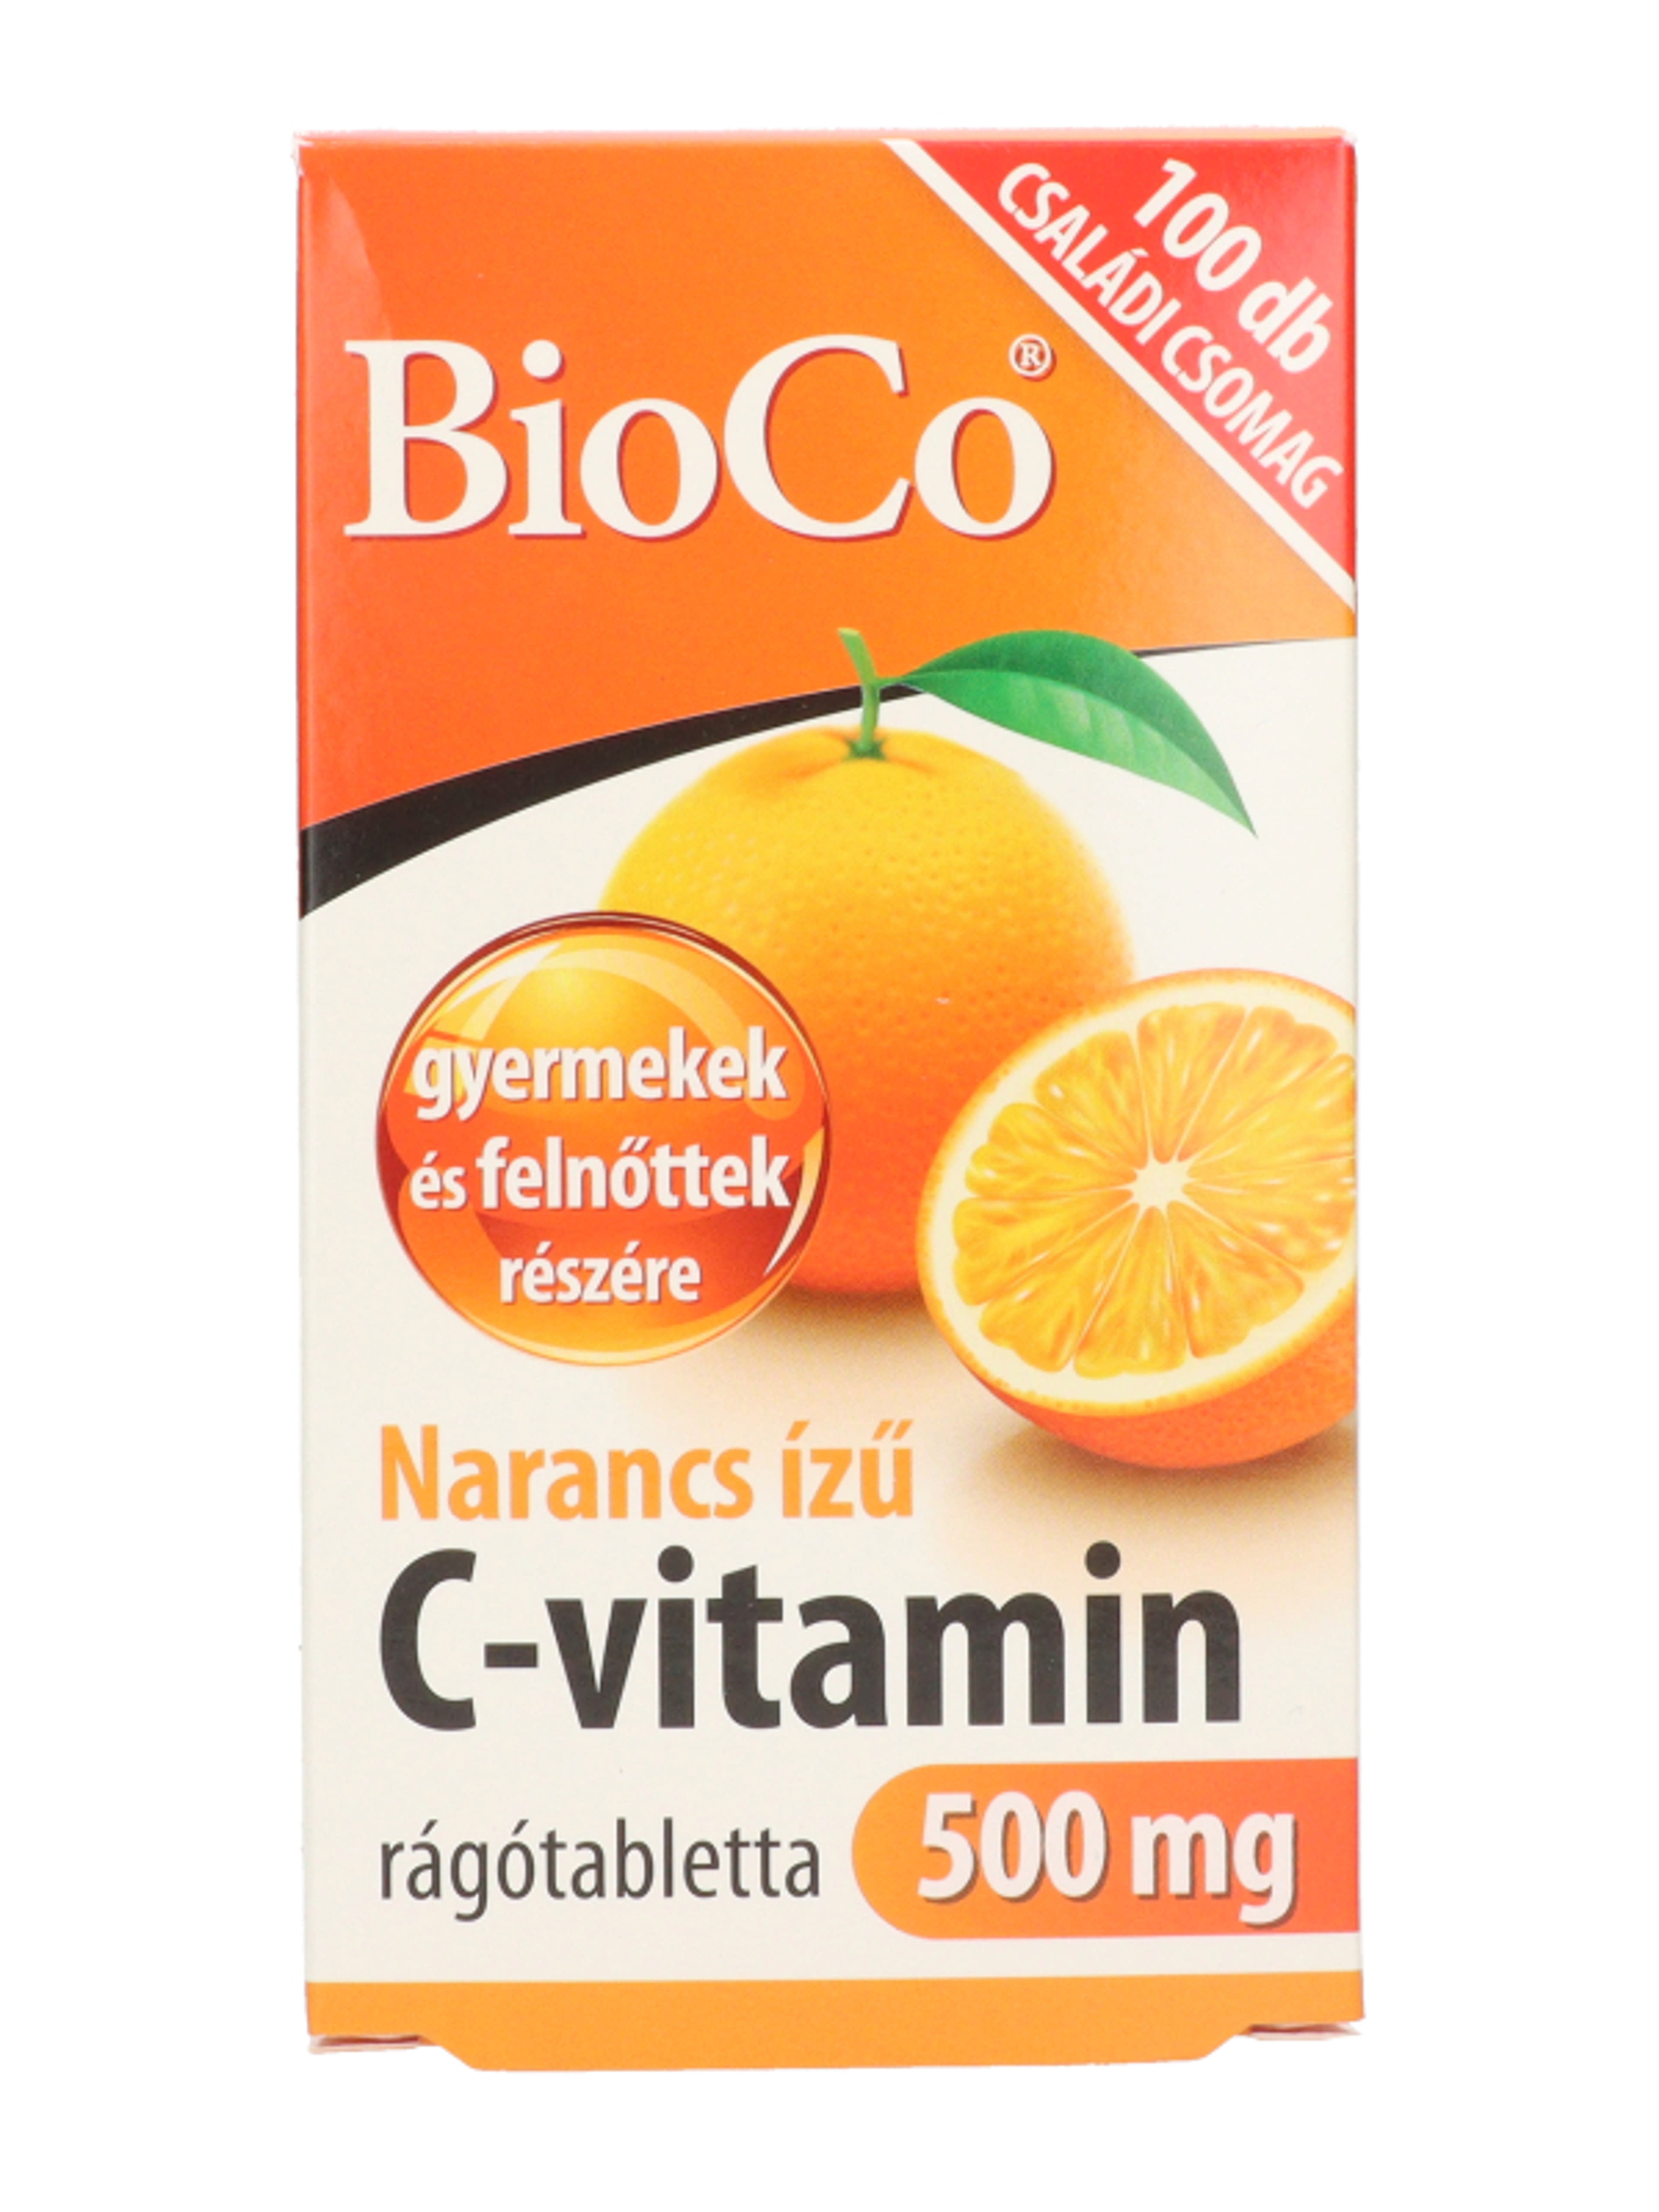 Bioco narancs ízű C-vitamin 500 mg rágótabletta - 100 db-3